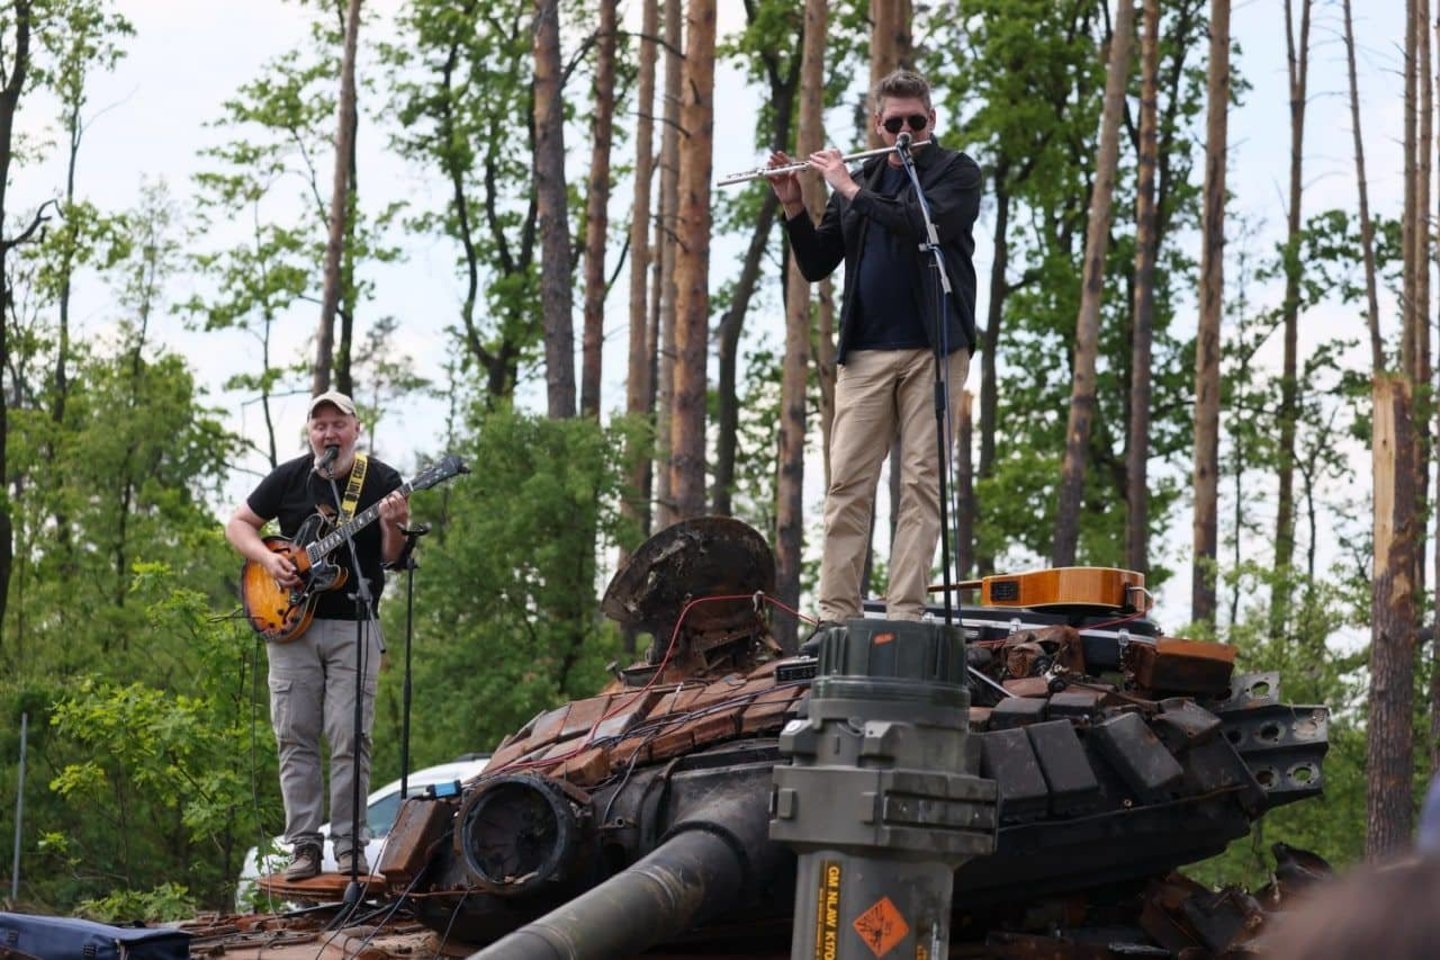  Šiuo metu Lietuvoje koncertuojant ukrainiečių grupė "Ocheretyany kit" visas surinktas lėšas skiria savo šalies kariuomenei, kovojančiai su nuožmiu priešu (nuotr. dešinėje - koncerto akimirka viename "karštų" taškų Ukrainoje).  <br> Nuotr. iš asmeninio archyvo.